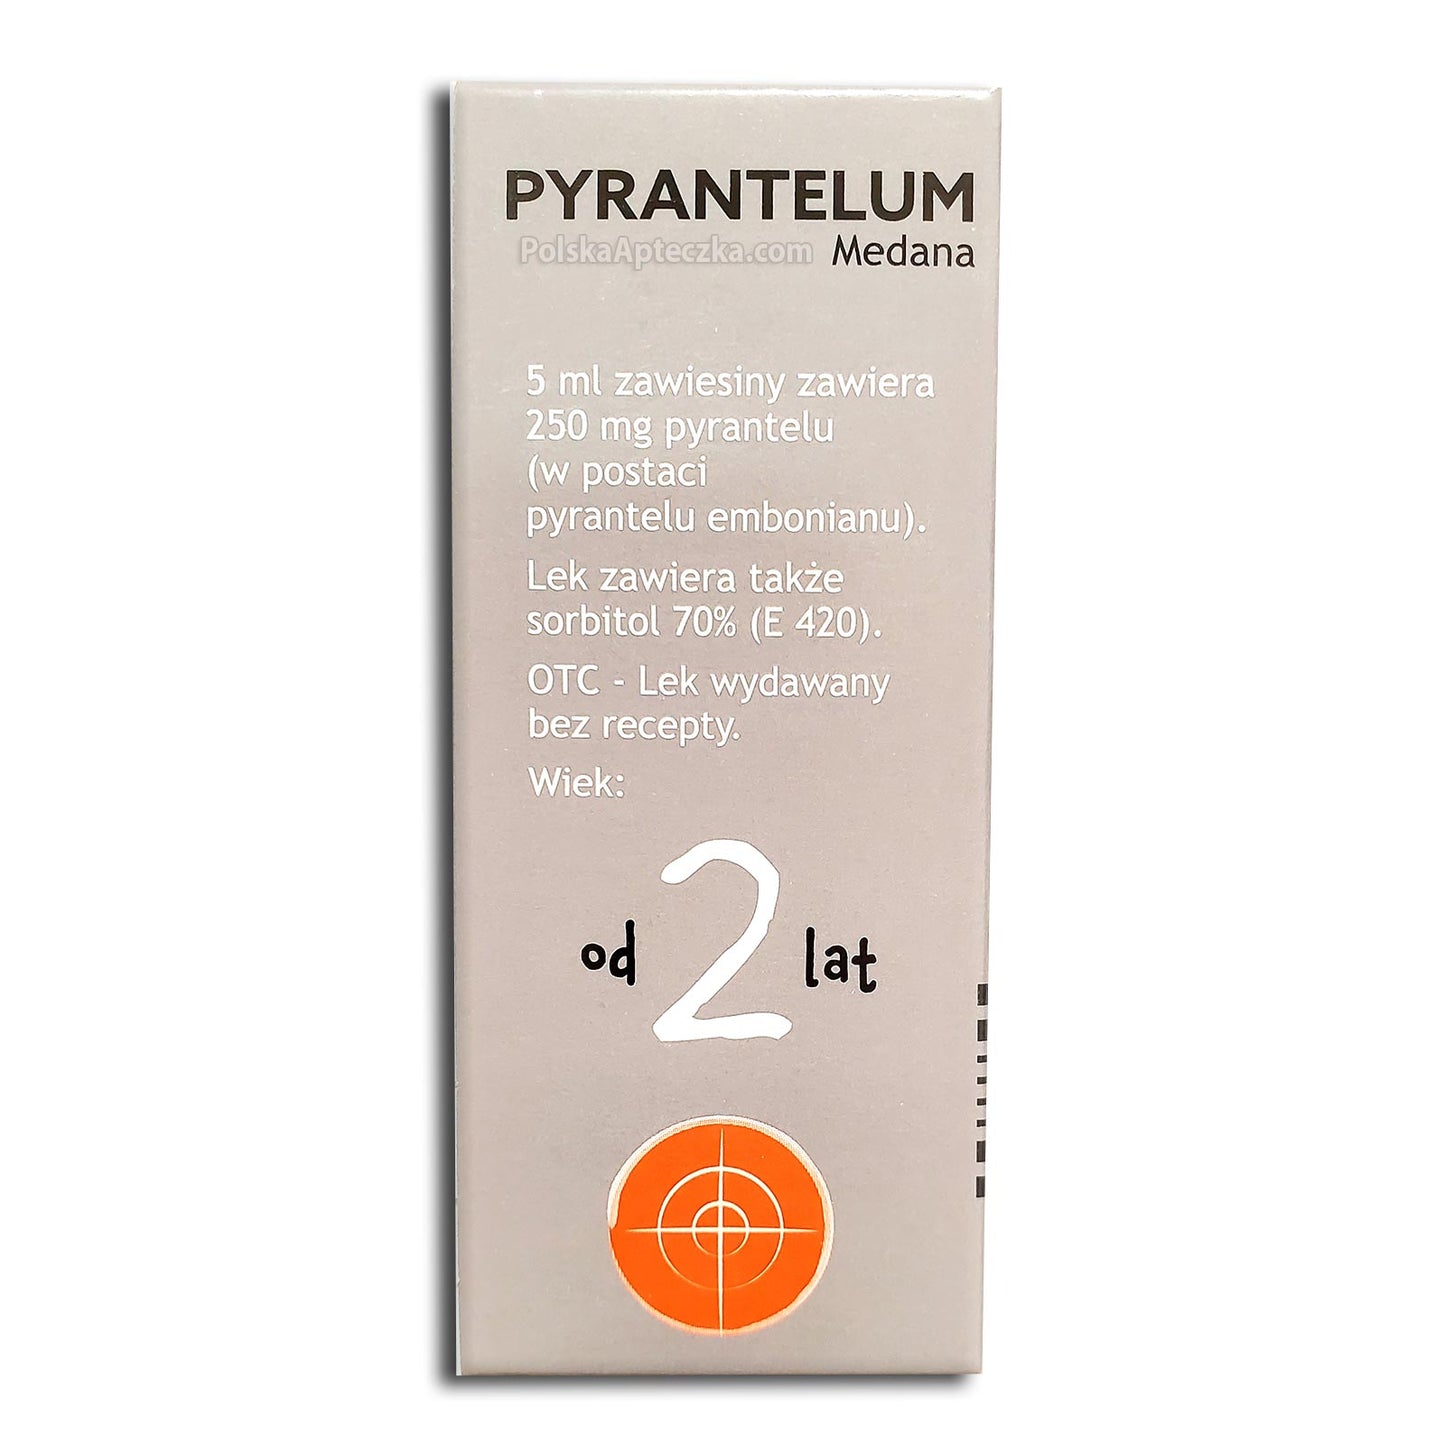 Pyrantelum Medana, zawiesina doustna, 15 ml